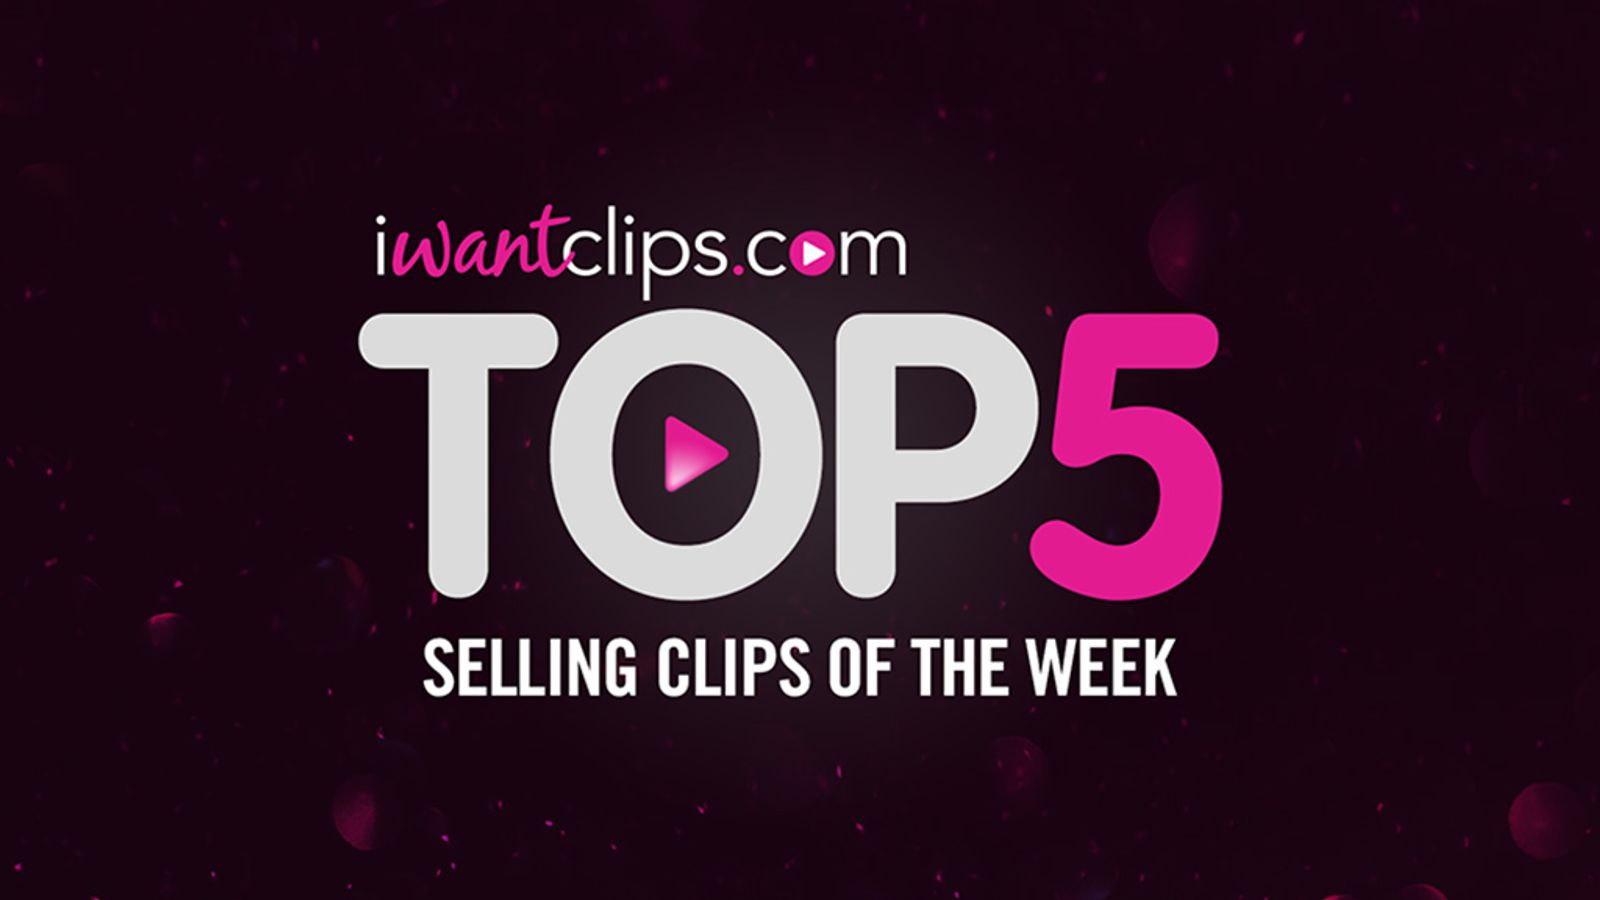 Financial Domination, JO Instruction Lead iWantClips' Week's Best